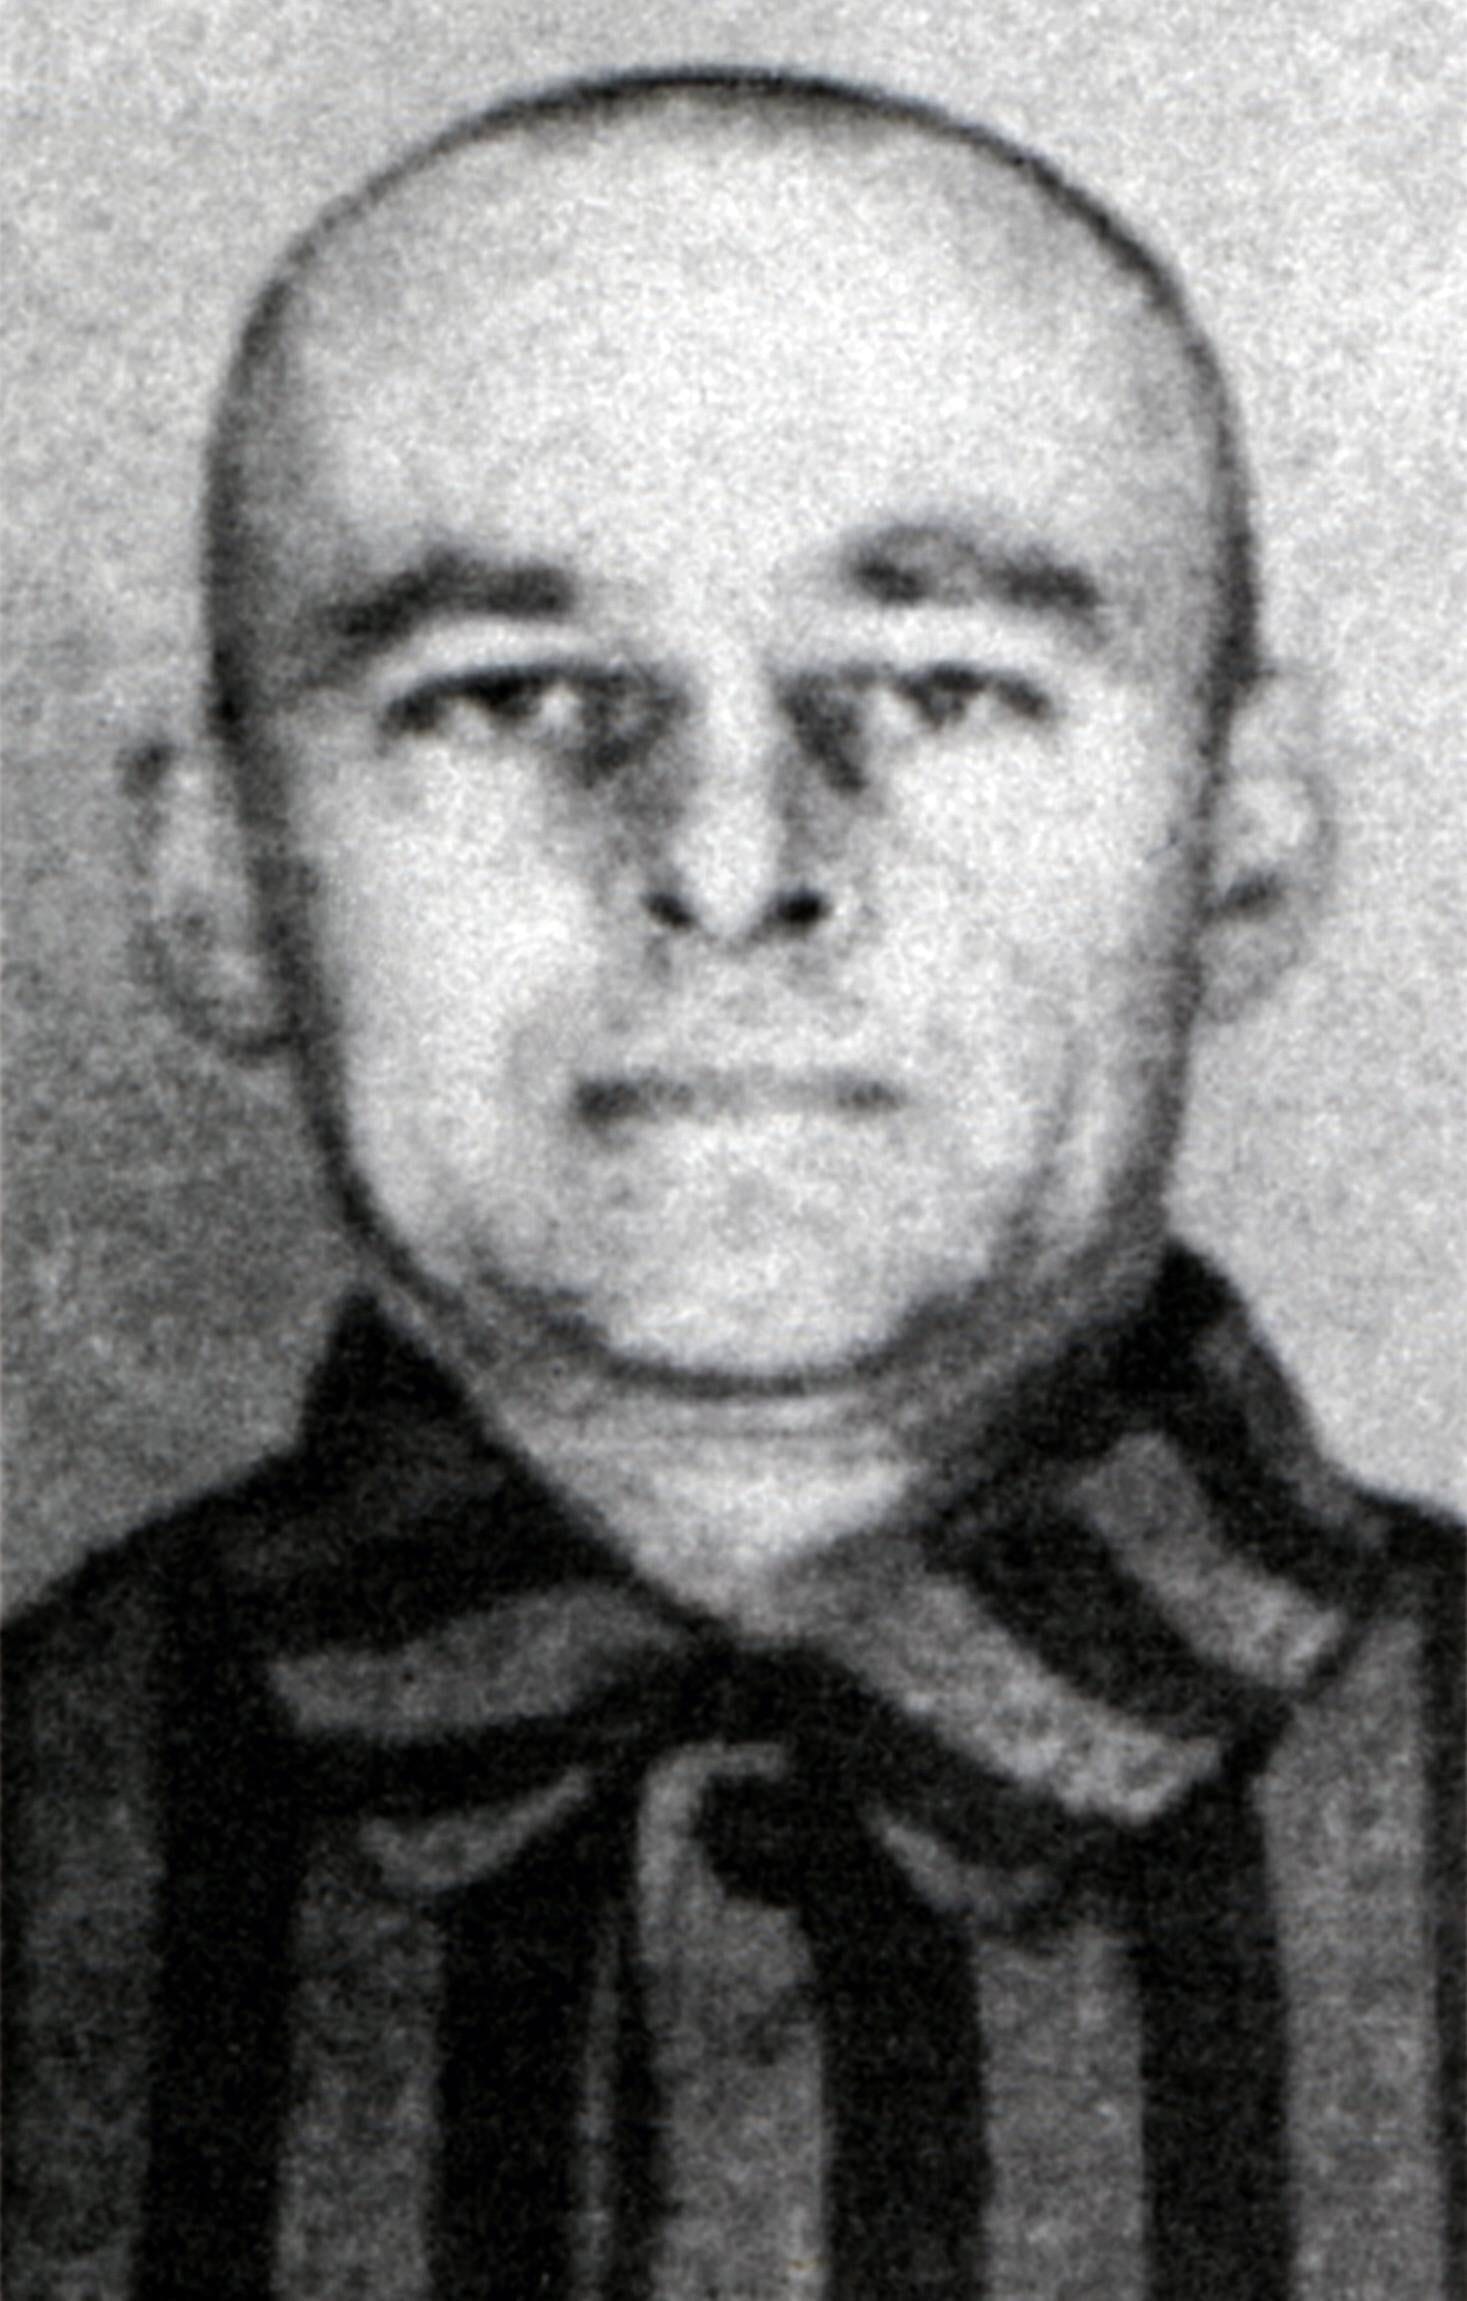 Witold Pilecki auf seinem Gefangenenbild in Auschwitz.